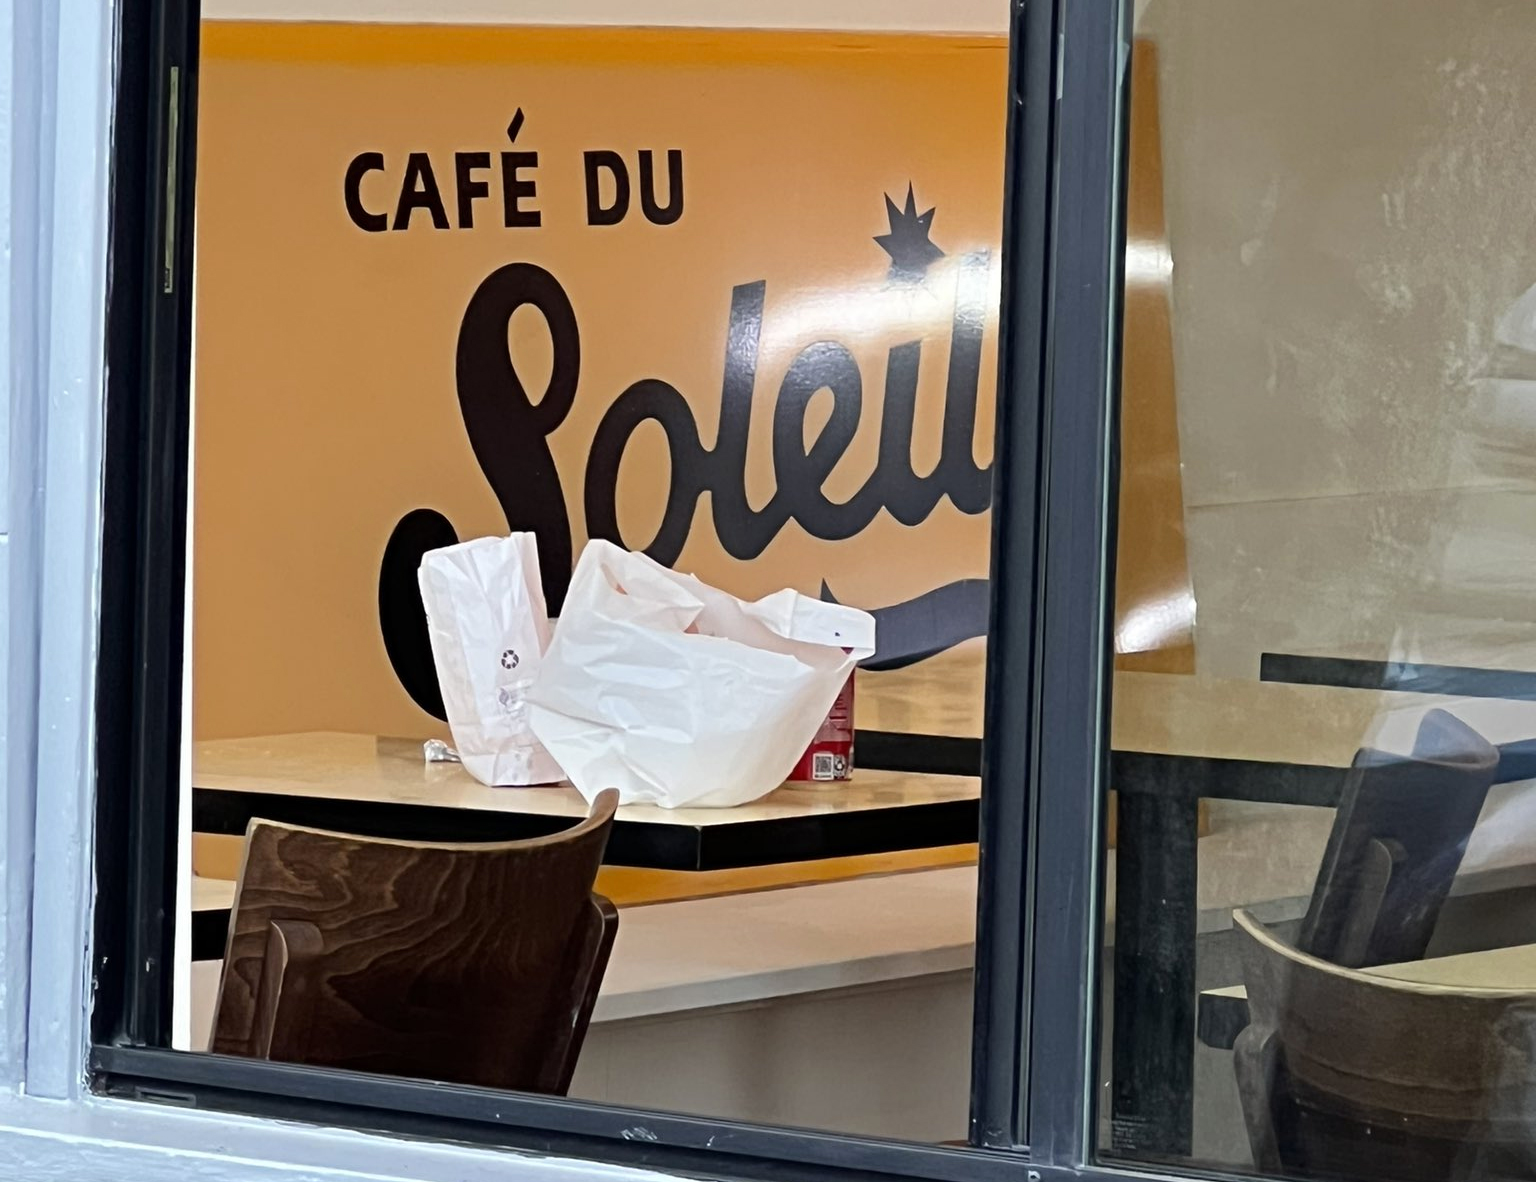 https://img.hoodline.com/2022/1/cafe-du-soleil-new-2.webp